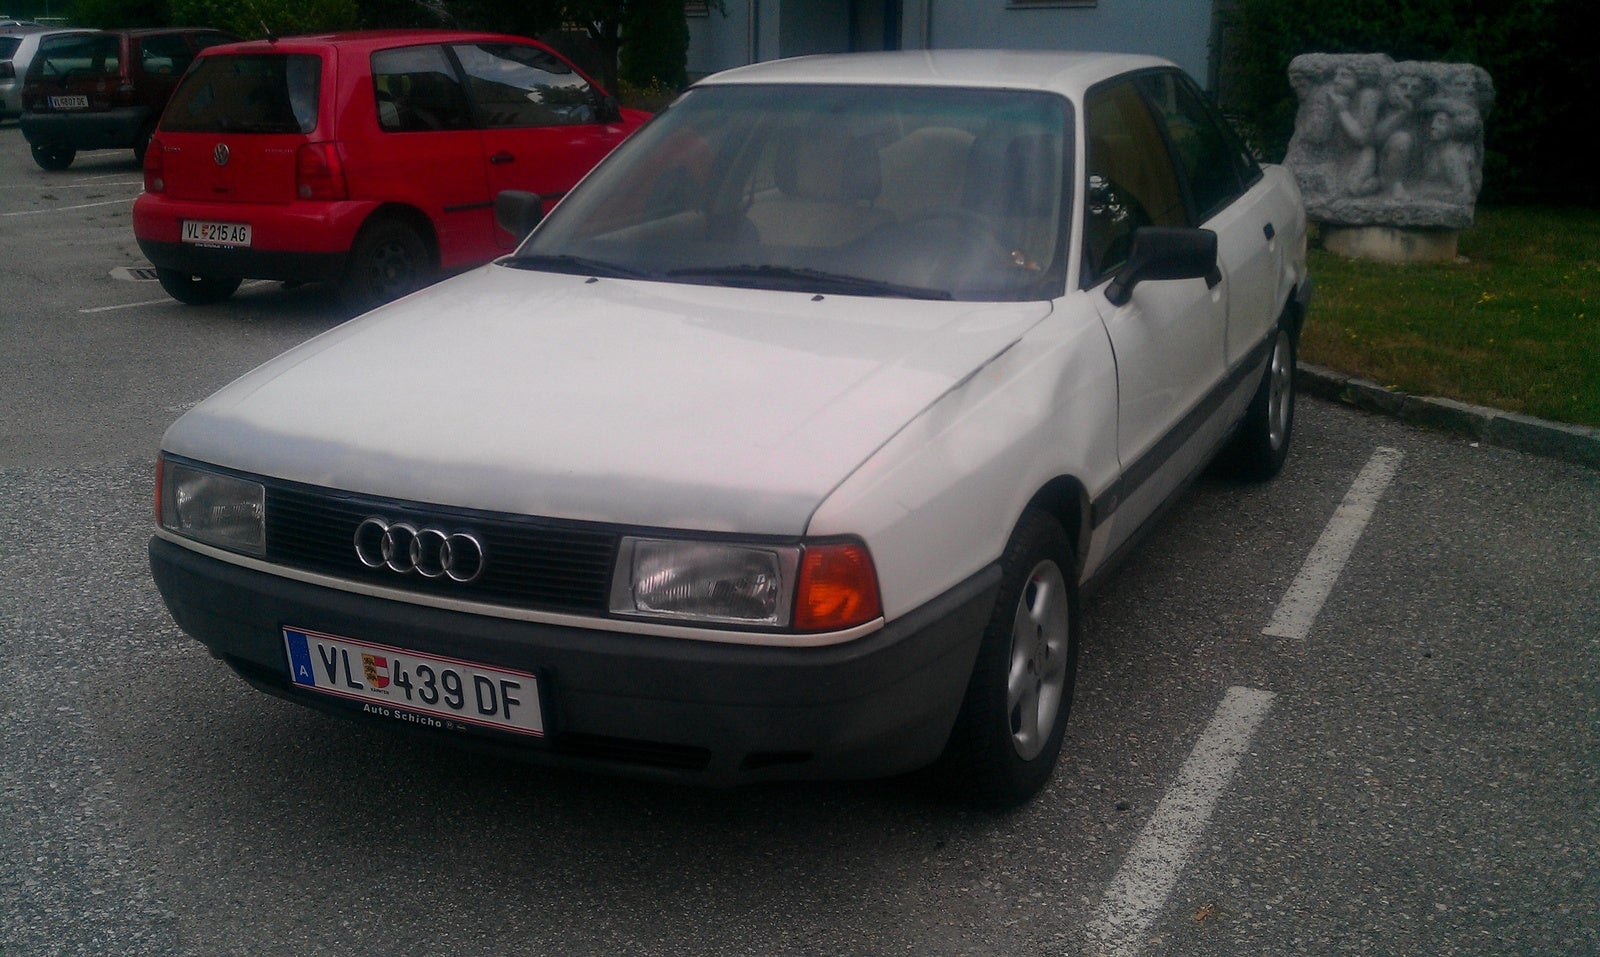 1988 Audi 80 - Pictures - CarGurus